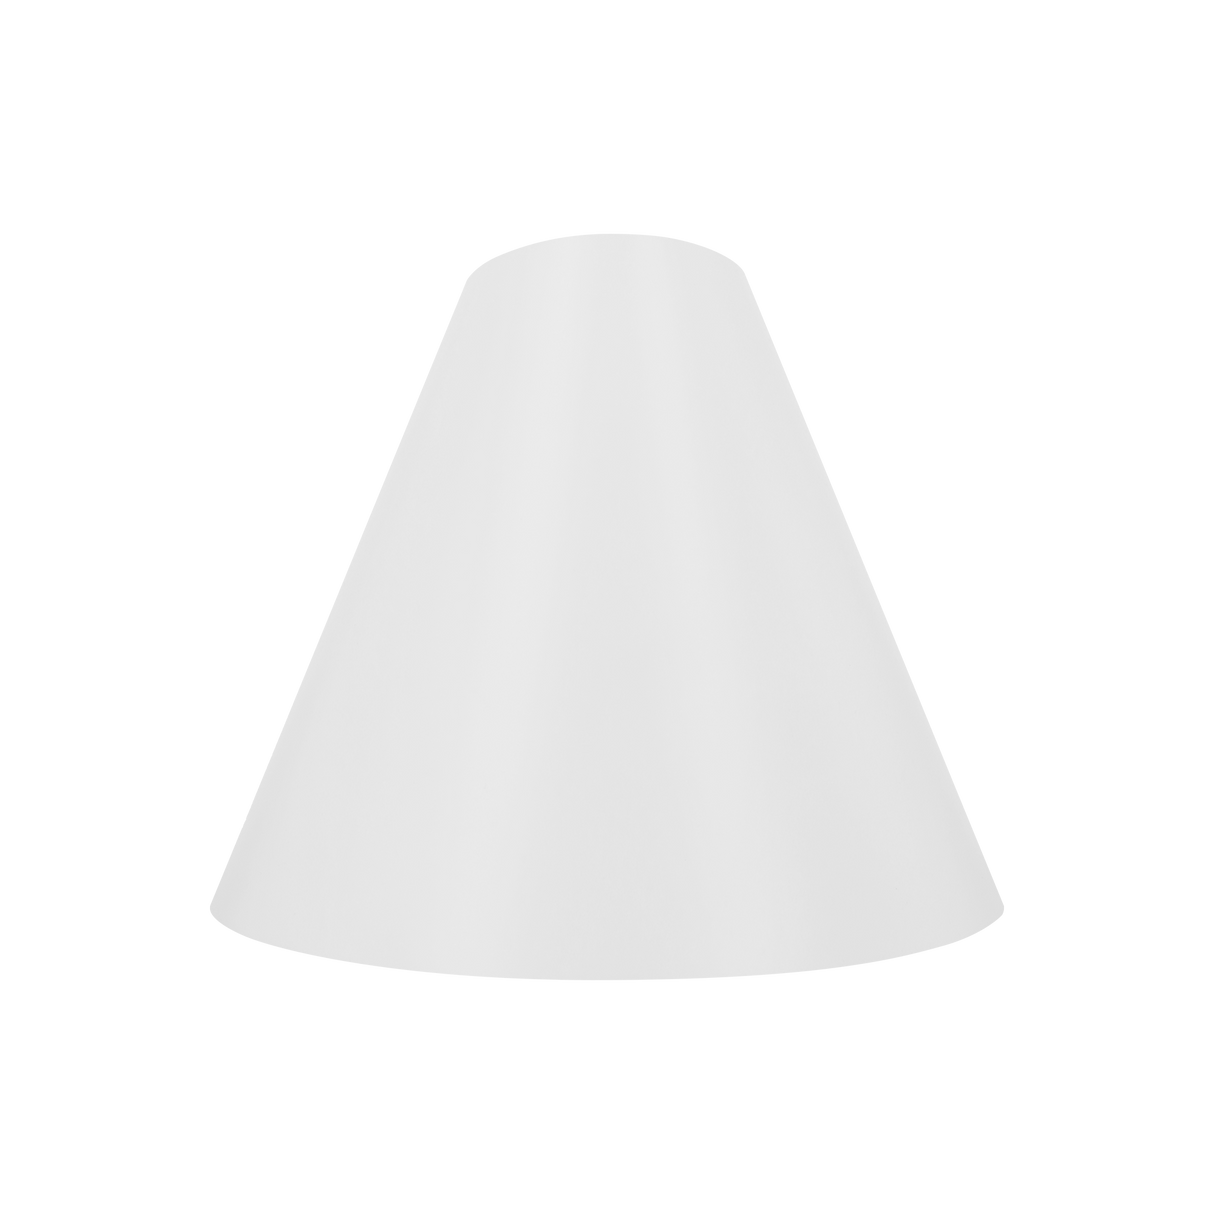 Light Cone